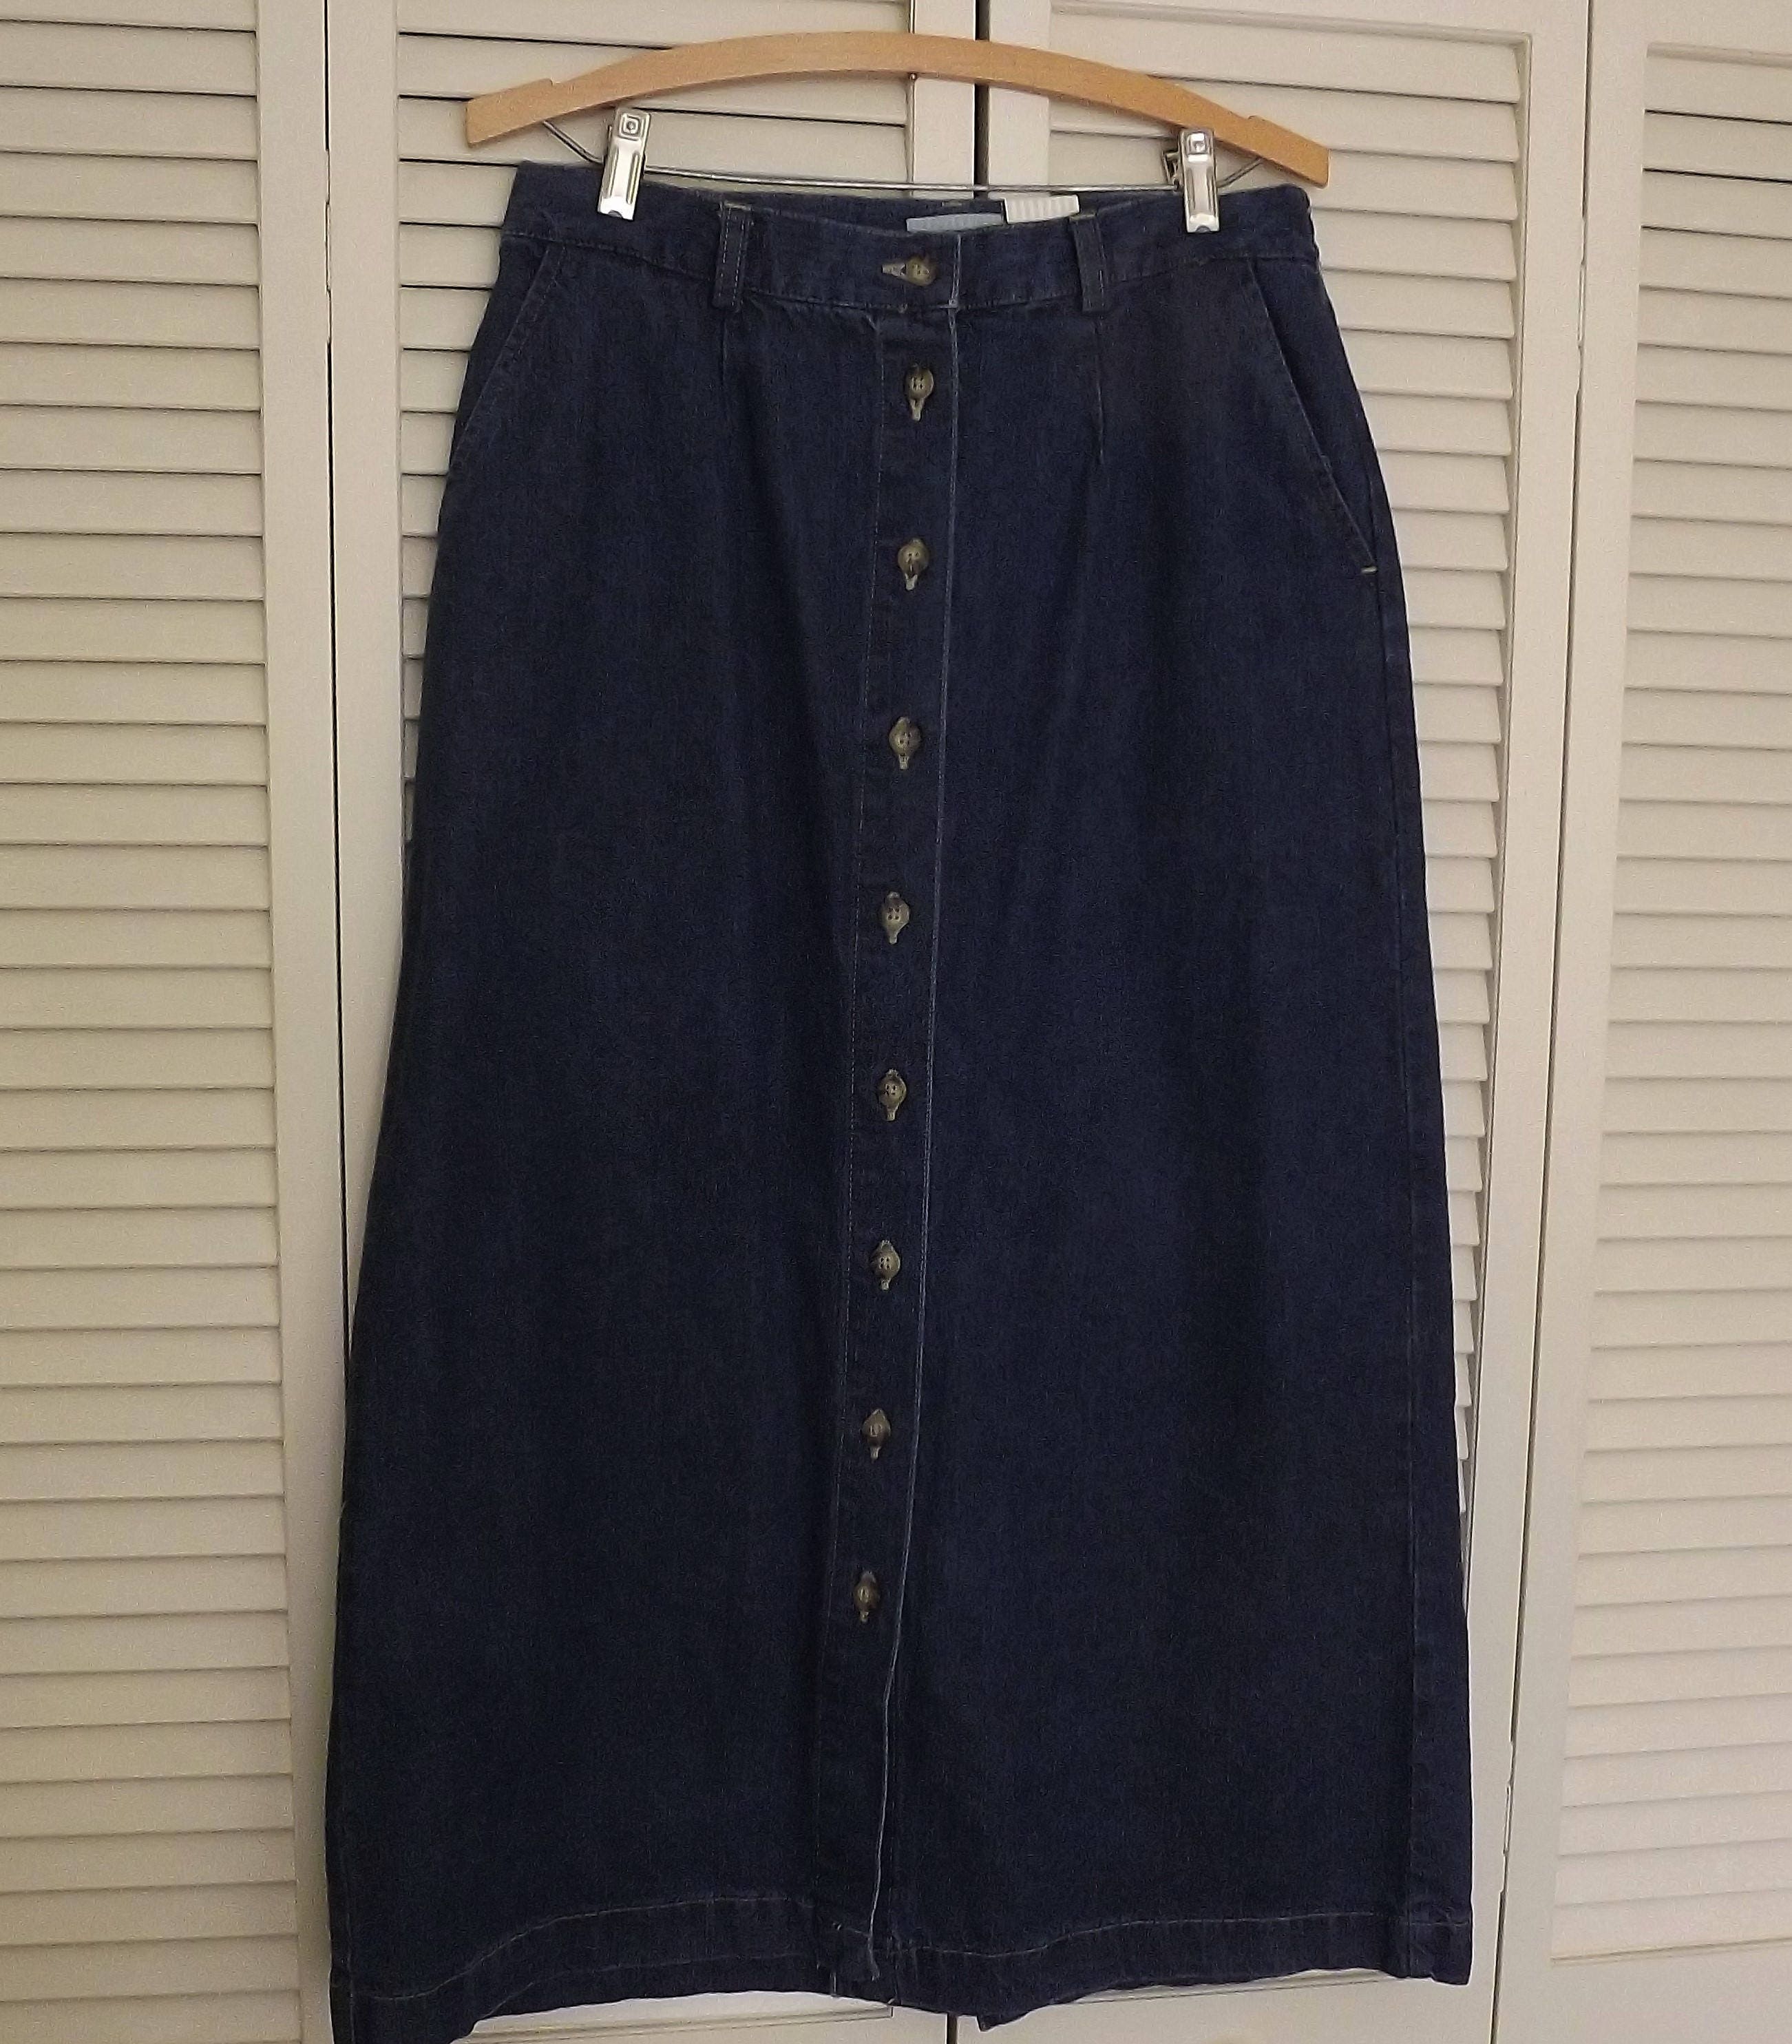 Long Denim Skirt Long Blue Jean Skirt Floor Length Mid Calf | Etsy